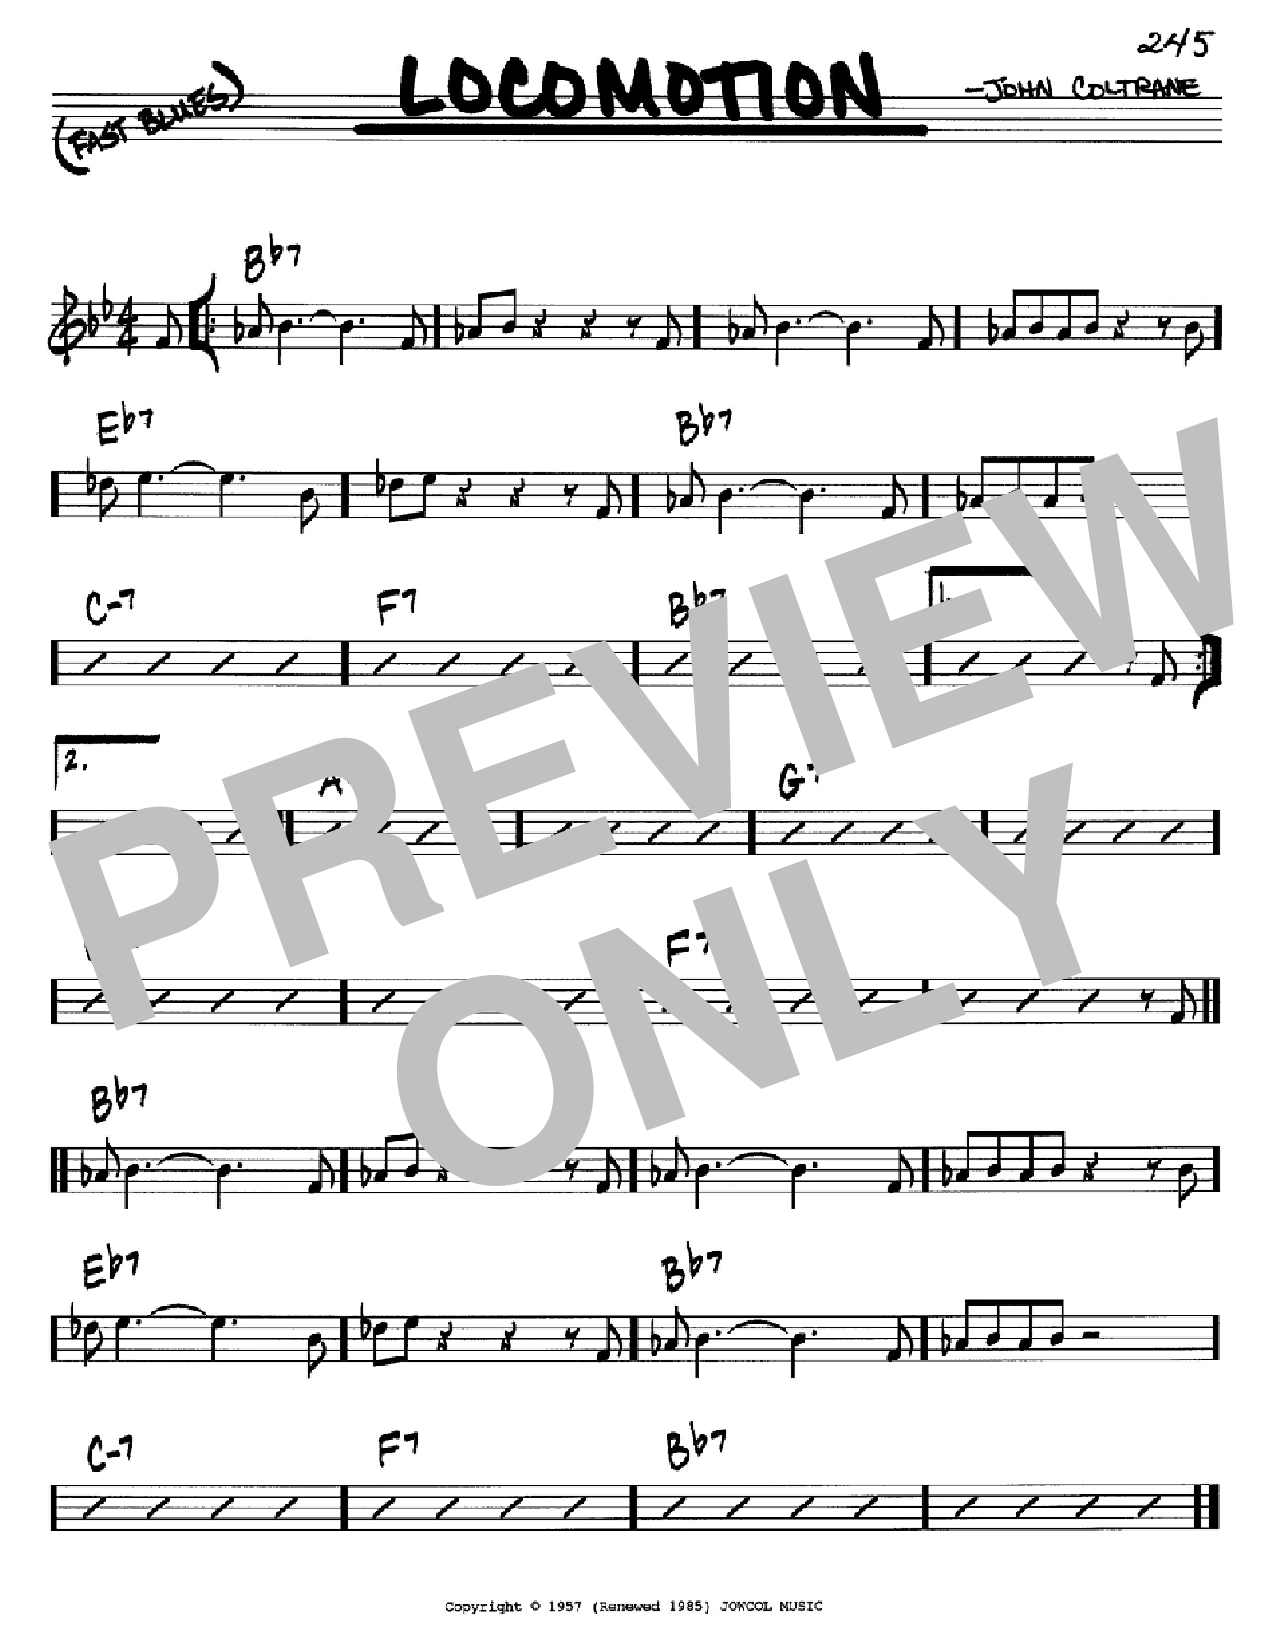 Download John Coltrane Locomotion Sheet Music